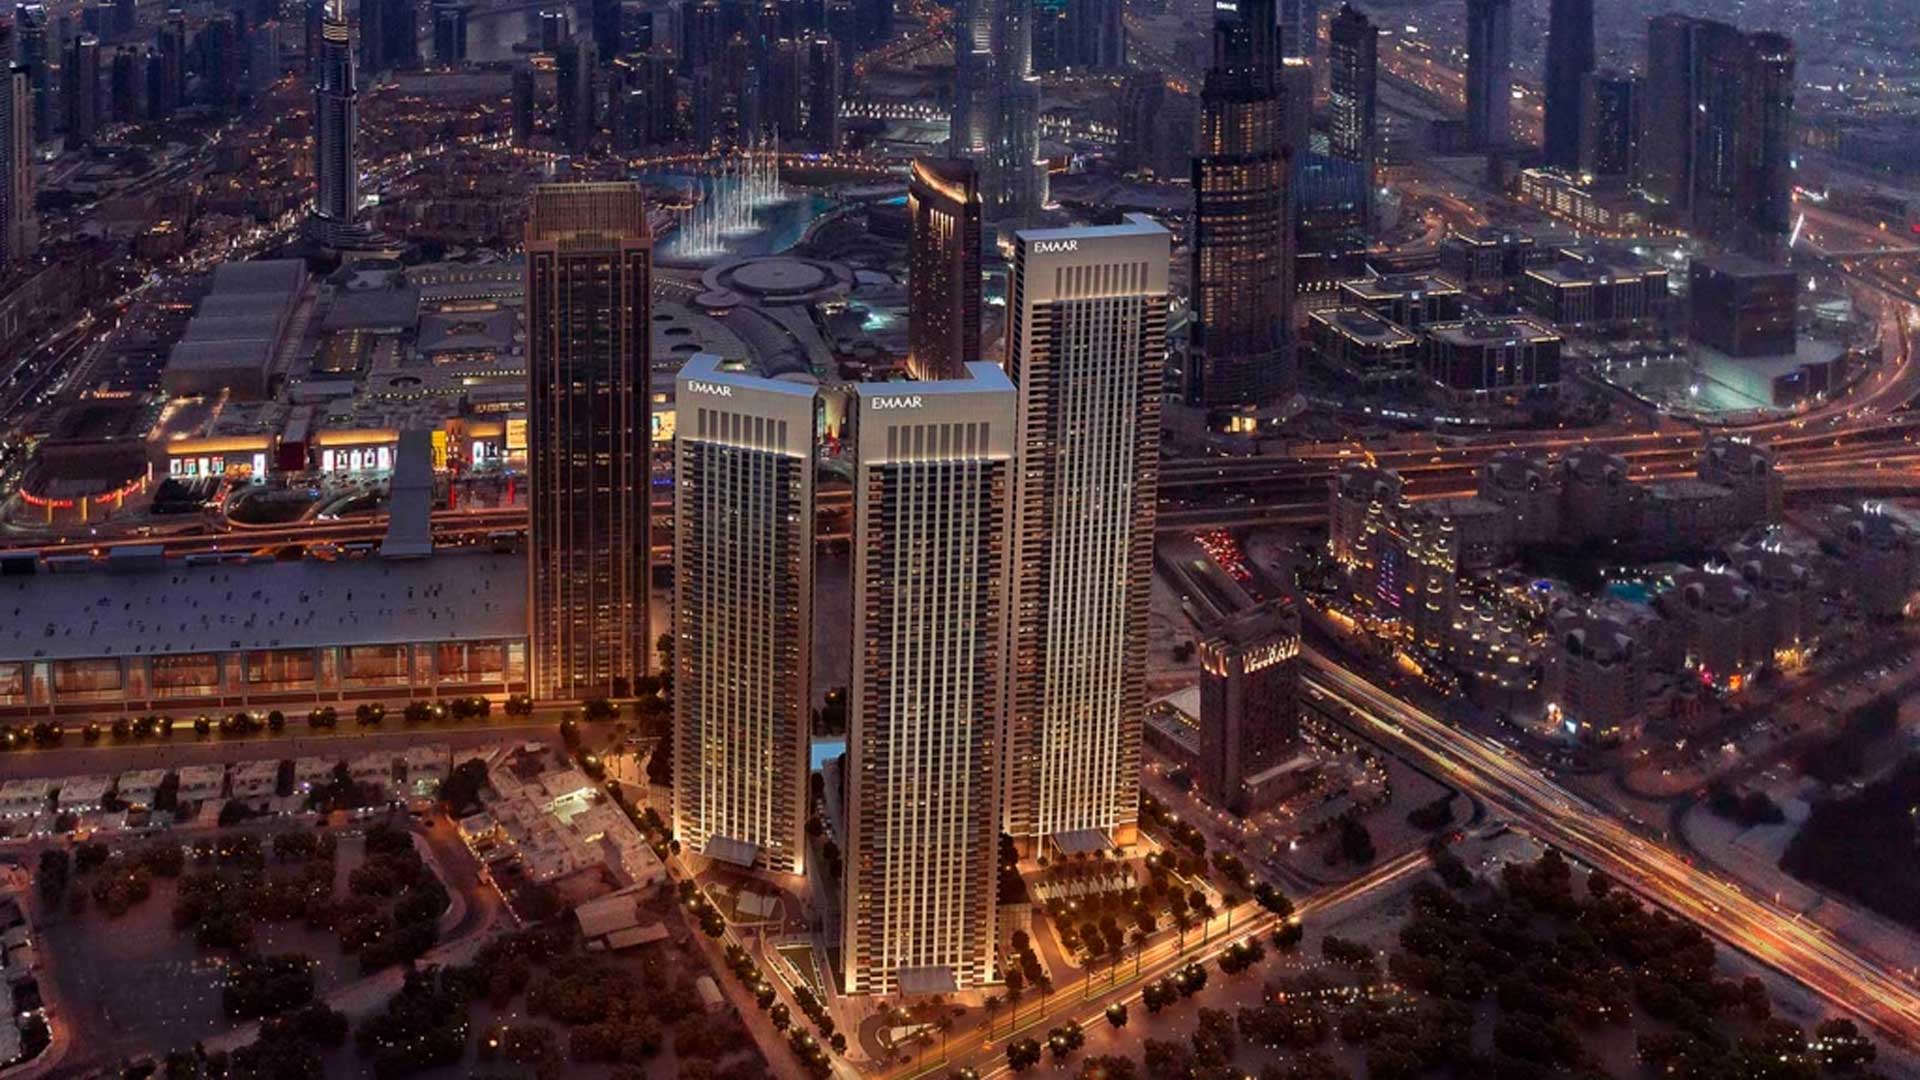 ST.REGIS RESIDENCES by Emaar Properties in Downtown Dubai, Dubai, UAE